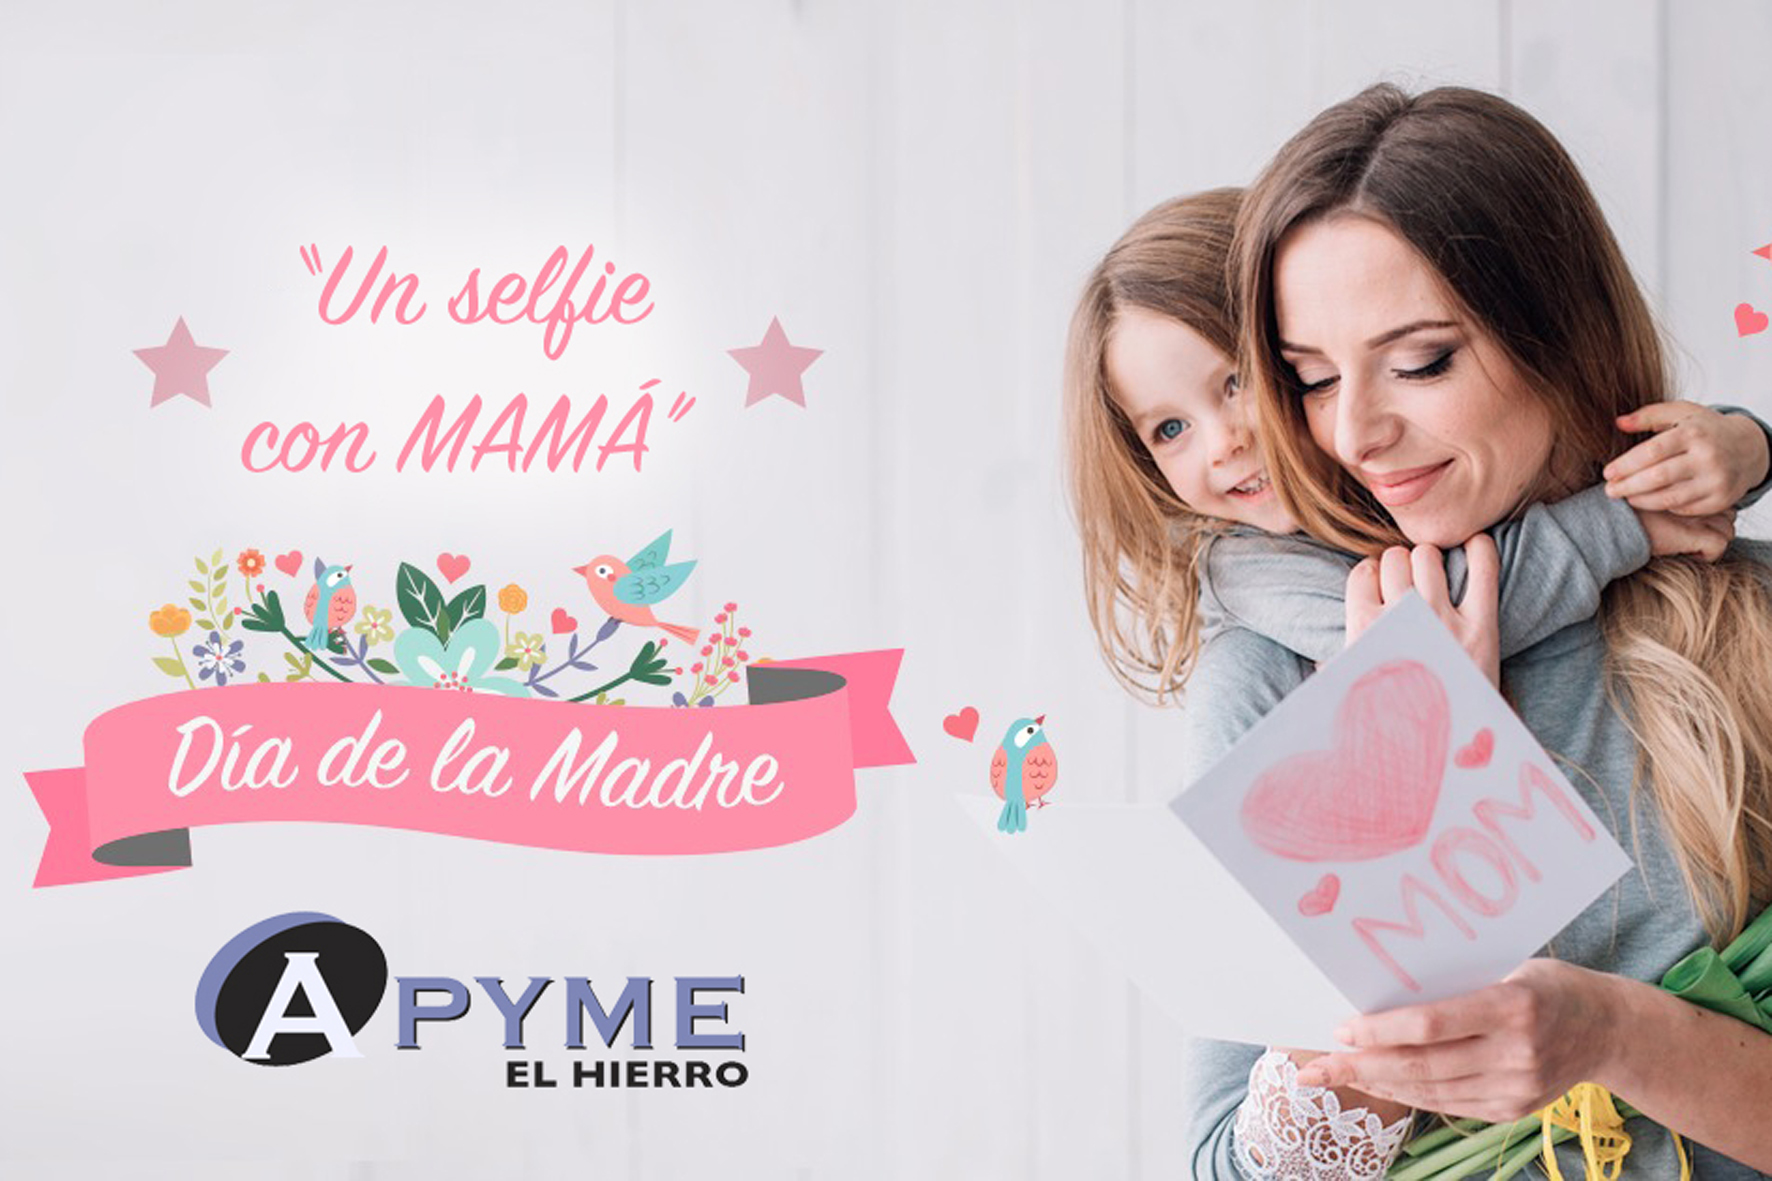 APYME El Hierro sortea de 100€ entre los “selfies con mamá”